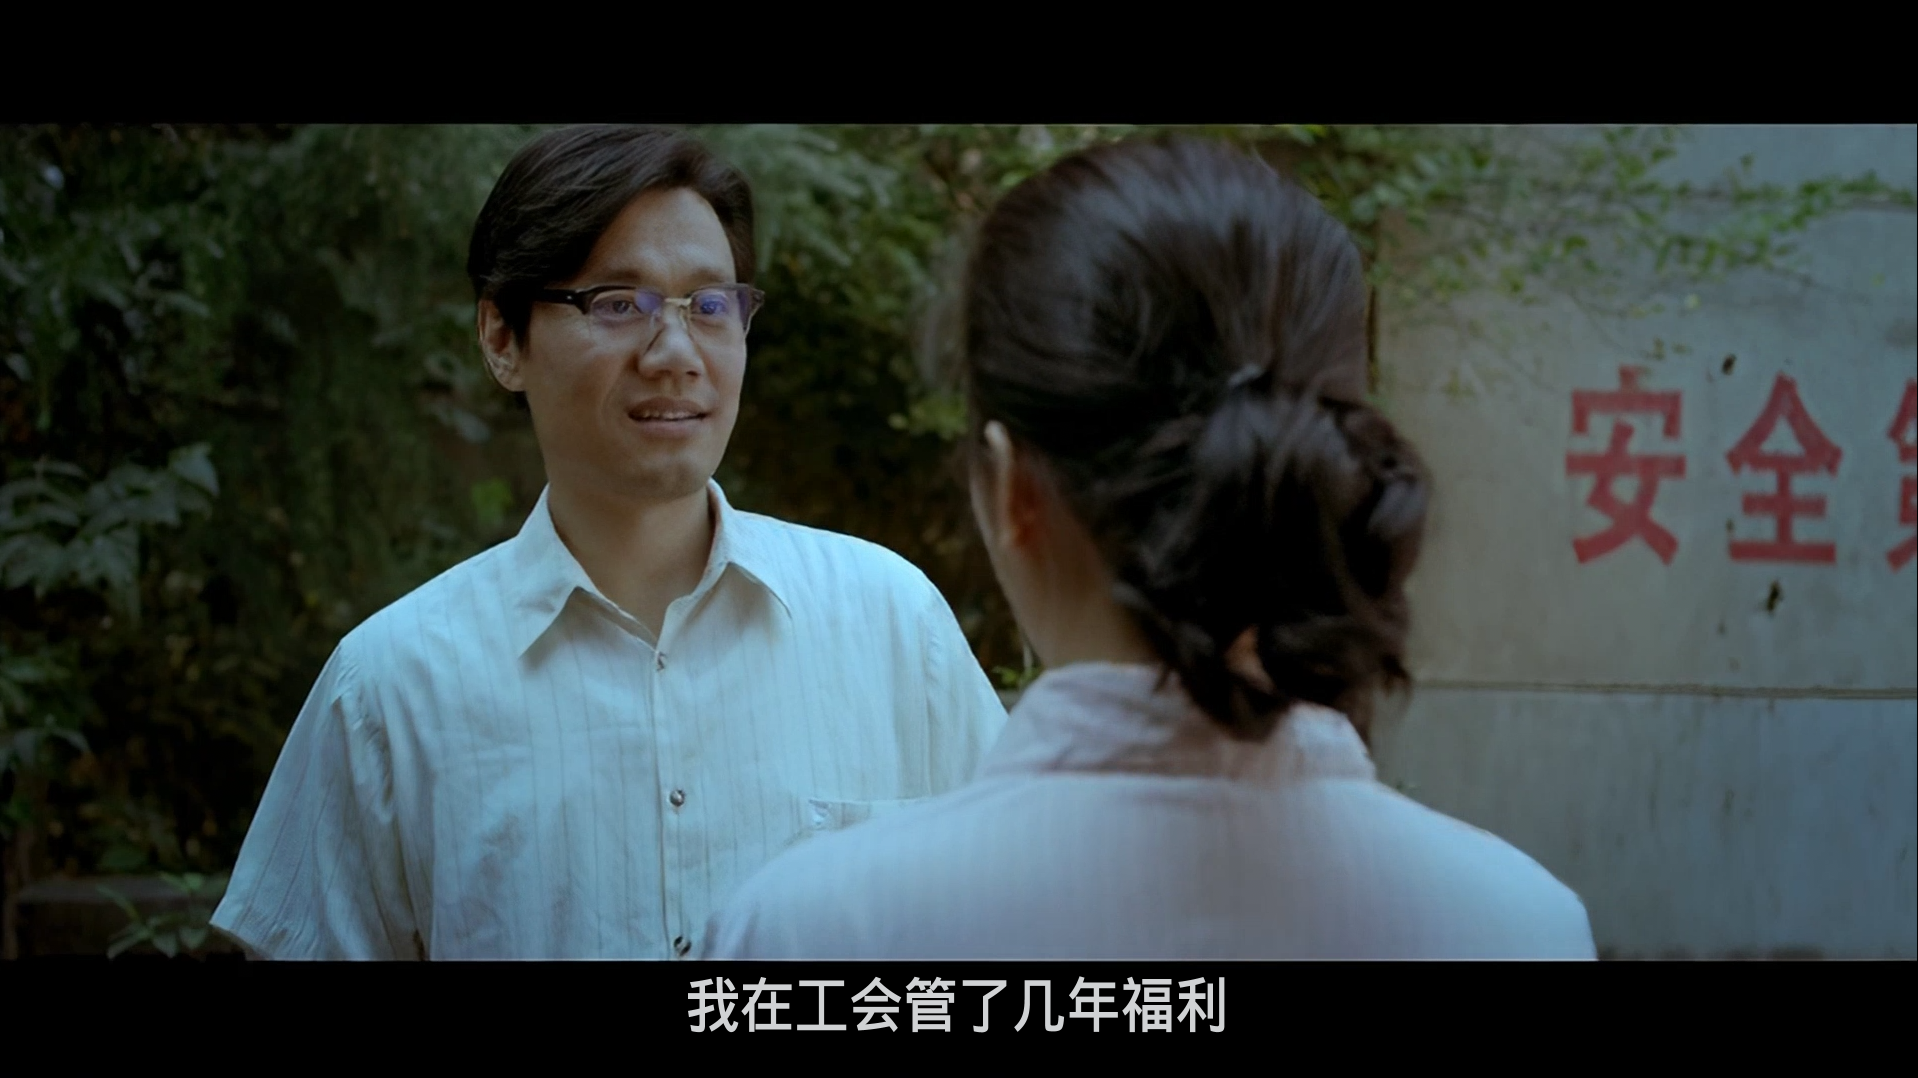 万箭穿心 [武汉方言无删减版DVD高清60帧高码简繁中字] Feng Shui 2012 DVD Blu-ray 1080p AVC DTS-5 1-BHYS@OurBits[24GB]-4.png